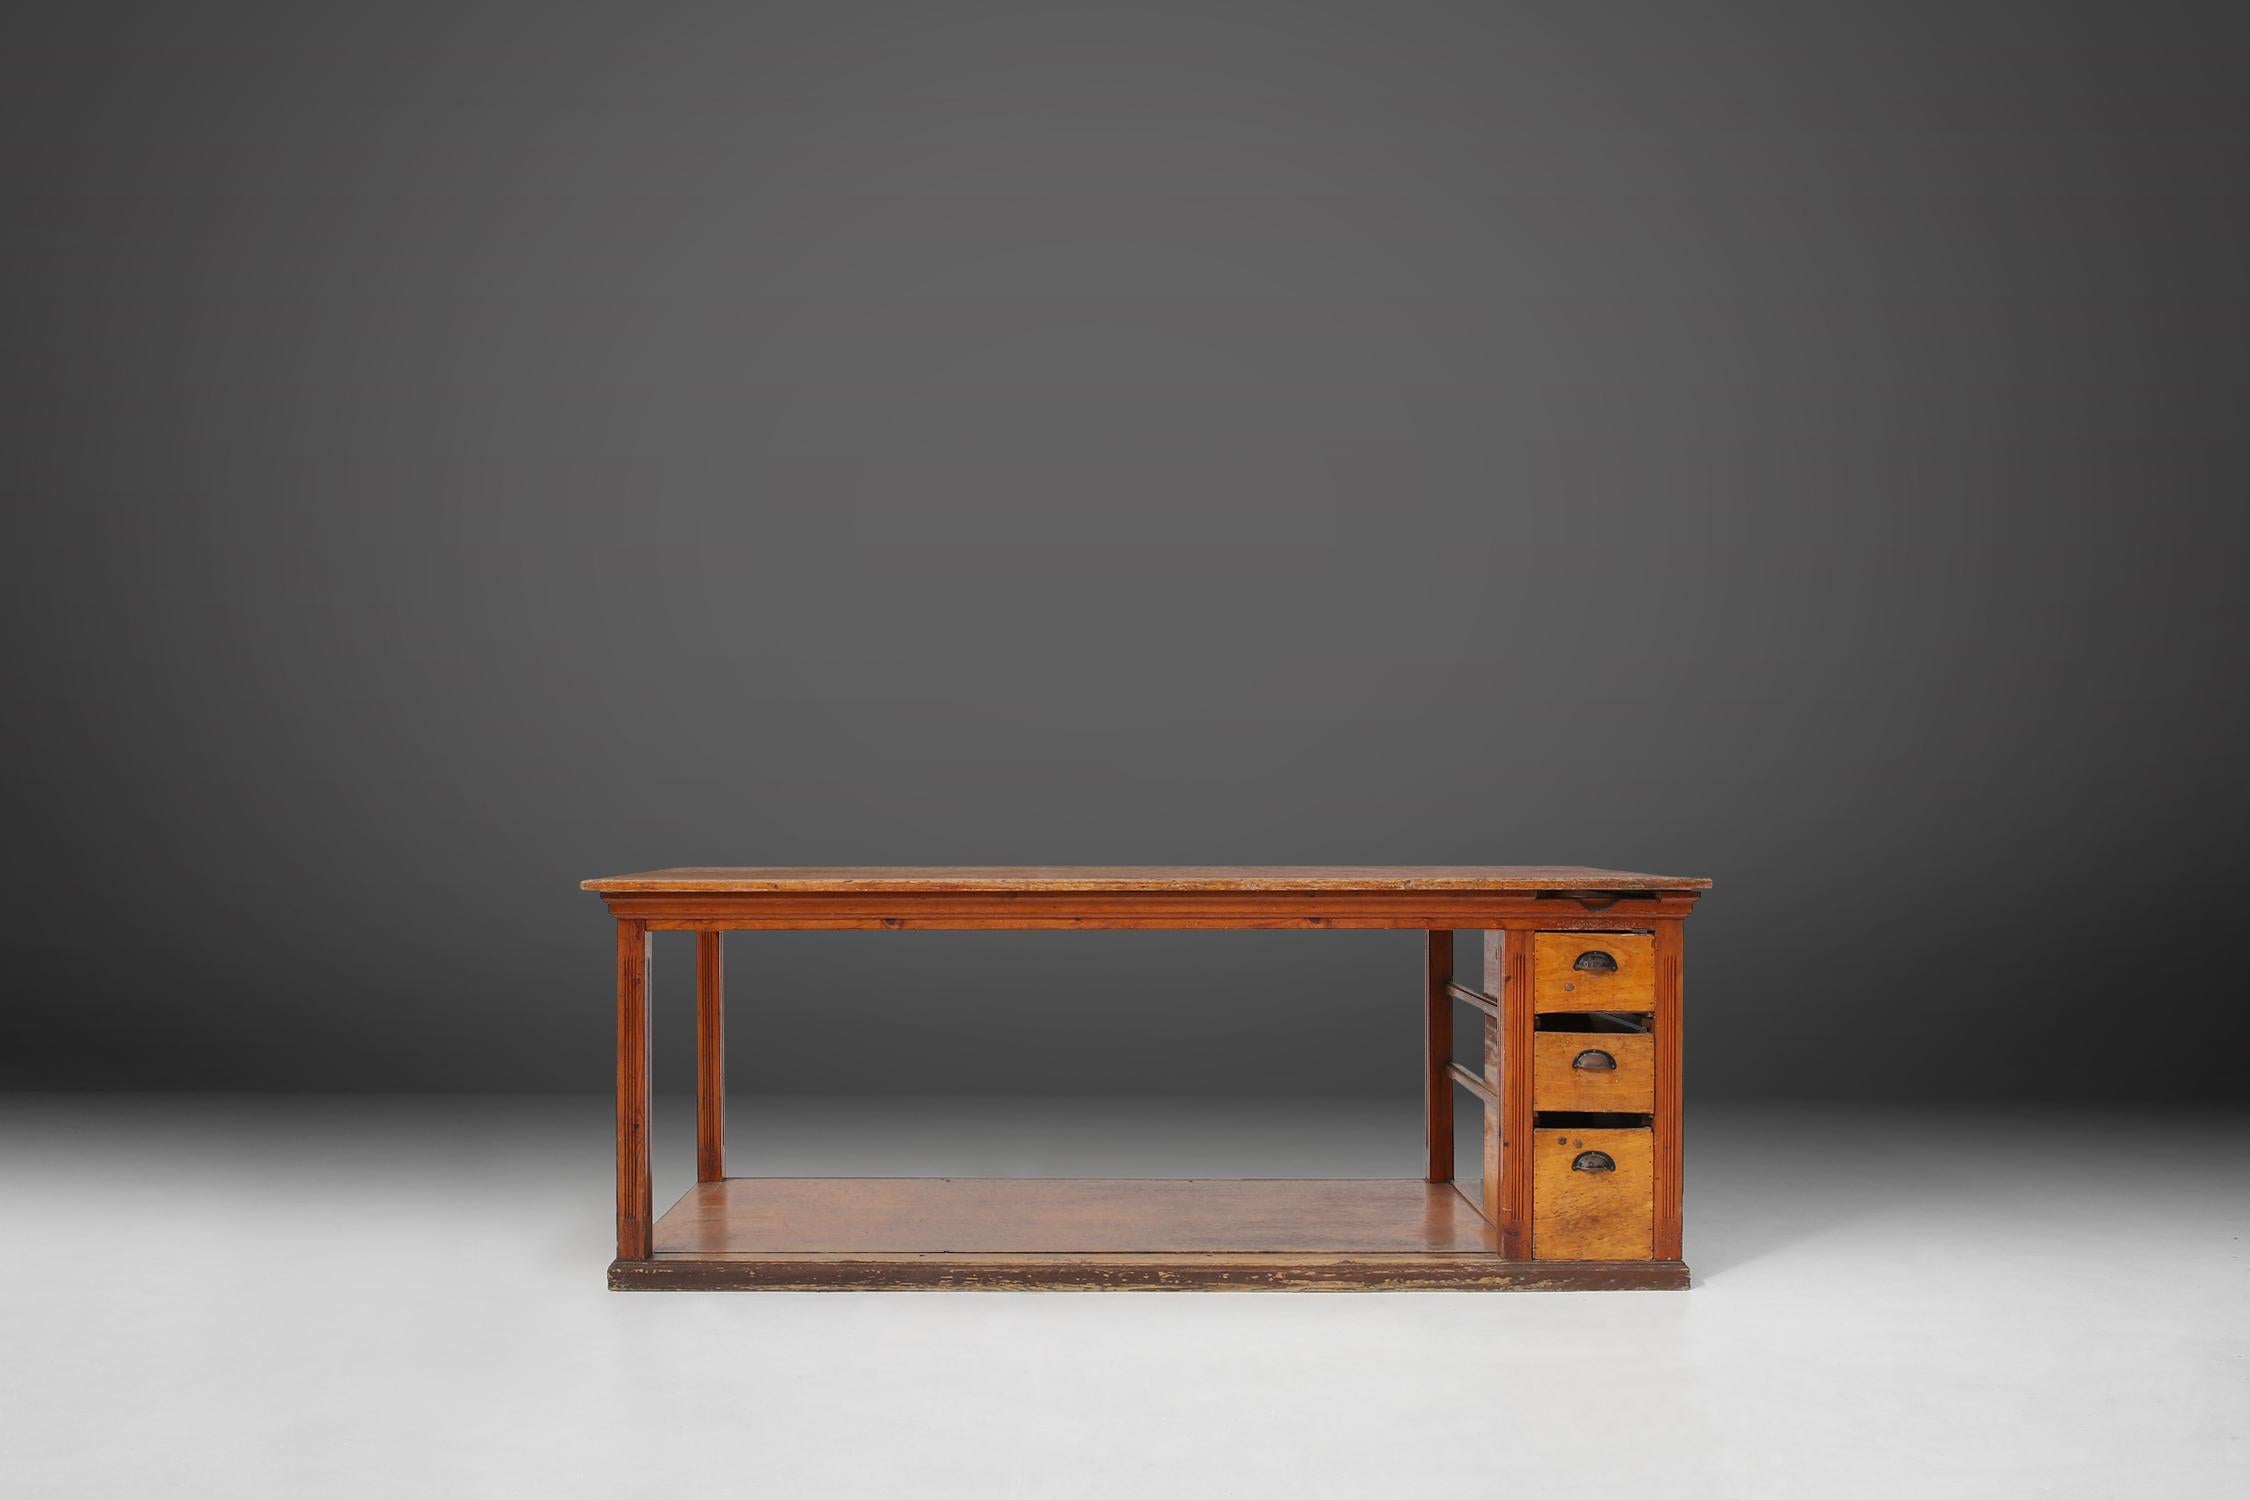 Französischer Arbeitstisch aus Kiefernholz, hergestellt um 1920. Ein großer Holztisch mit toller Patina auf dem Holz. Das robuste Gestell ist mit einem praktischen Boden und drei Schubladen auf der rechten Seite ausgestattet, die einen perfekten